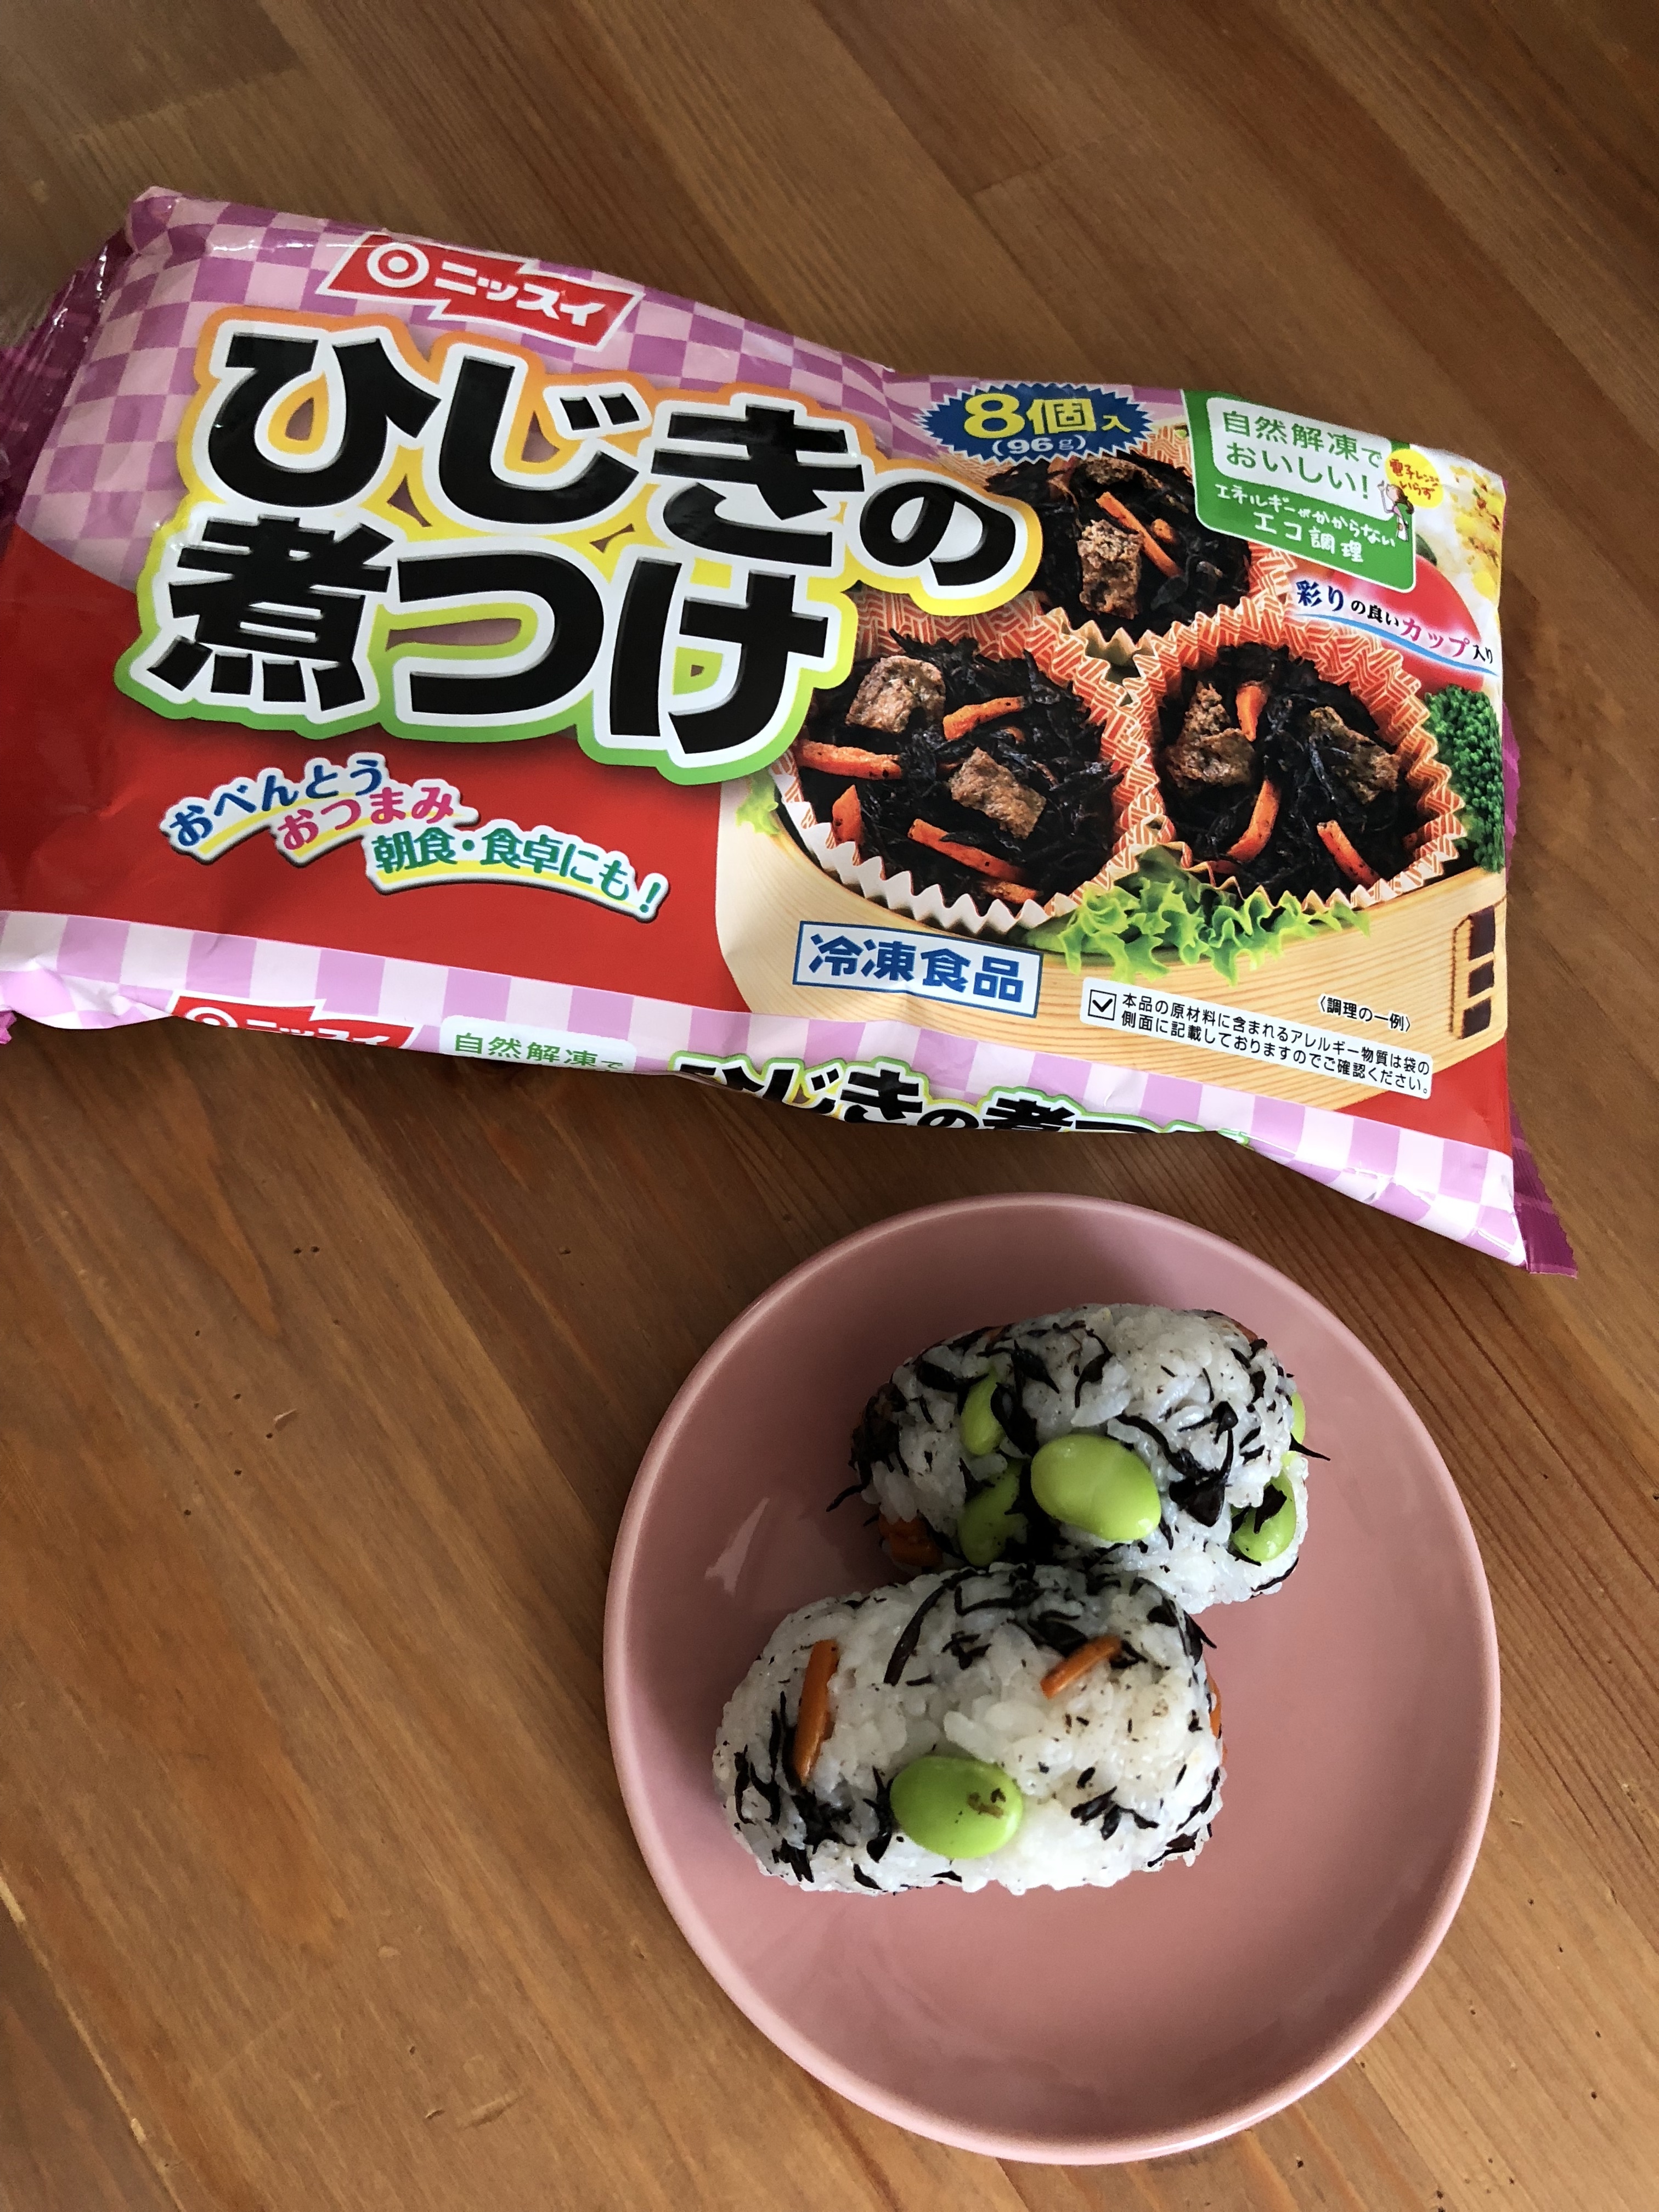 レシピ 日本水産のひじきと枝豆のおにぎり 冷凍食品の冷食 Com お昼ご飯にさっと出来て栄養満点です 見た目の色も綺麗です